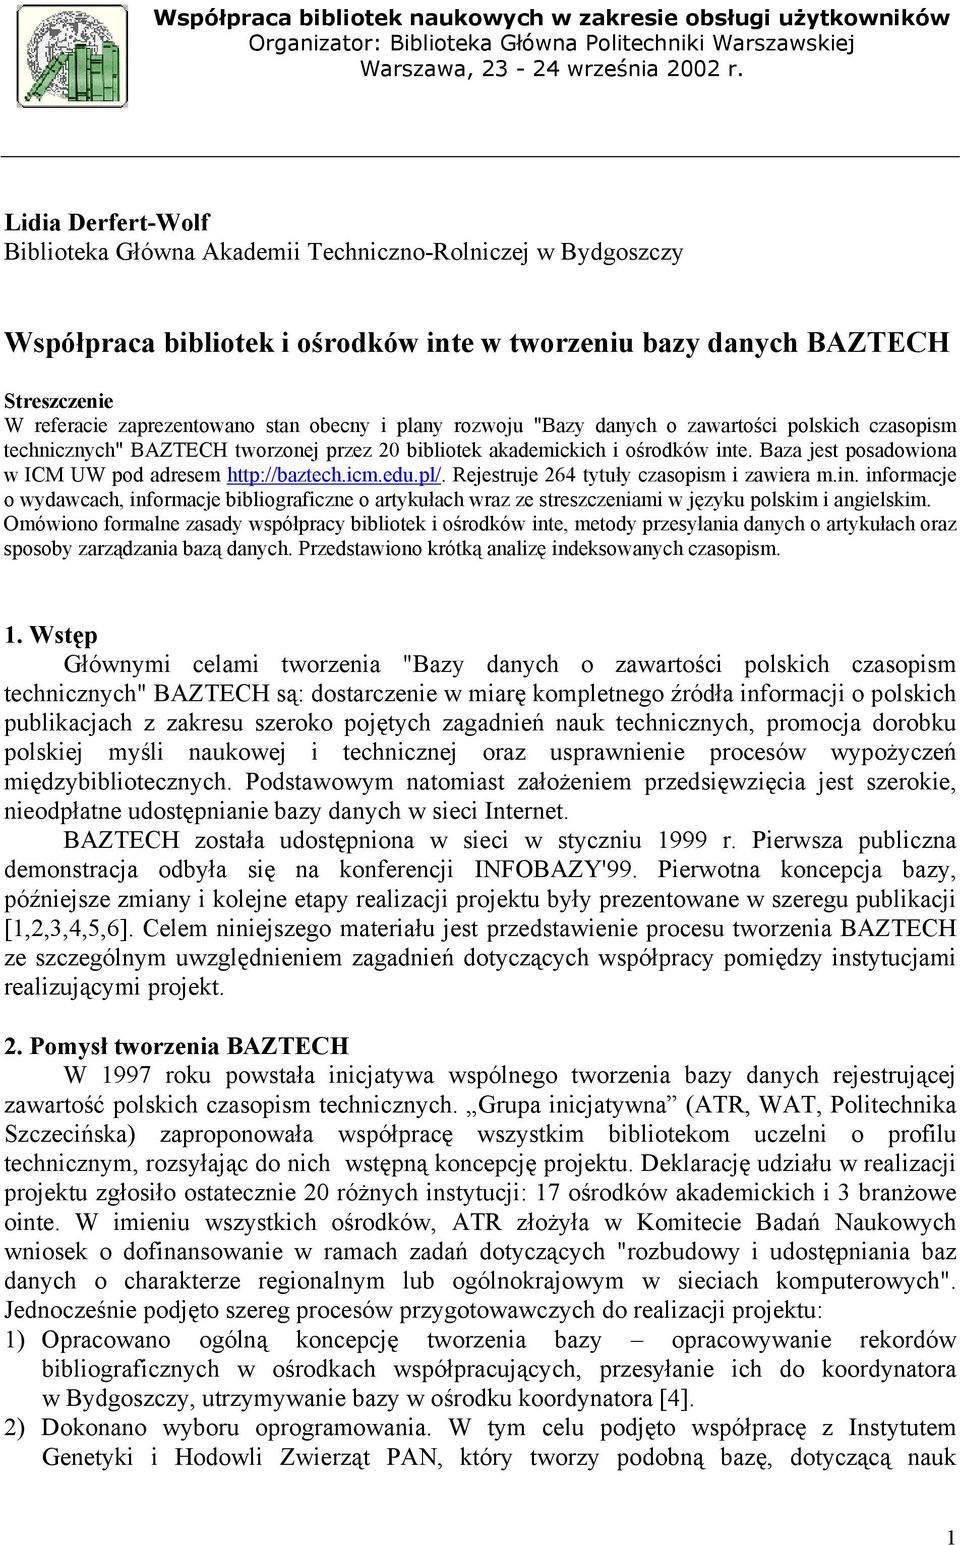 obecny i plany rozwoju "Bazy danych o zawartości polskich czasopism technicznych" BAZTECH tworzonej przez 20 bibliotek akademickich i ośrodków inte.